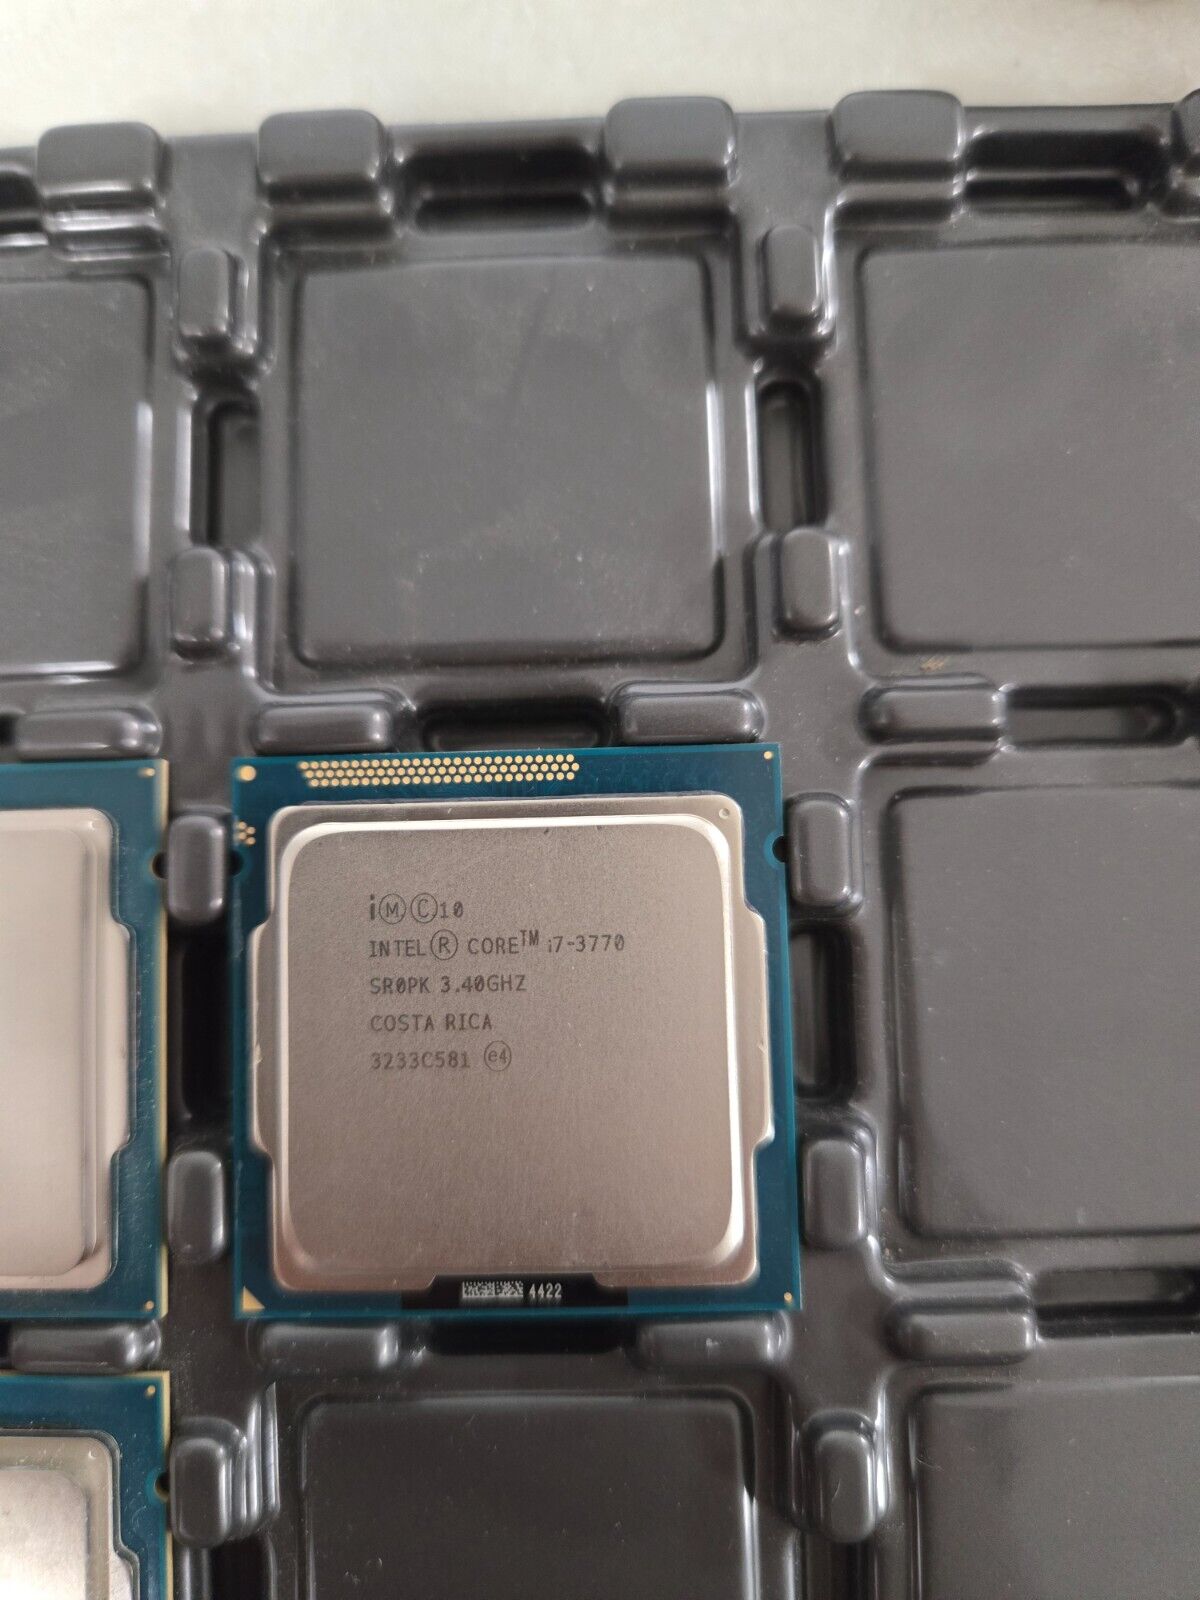 Intel i7-3770 SR0PK 3.40GHz 8MB 4-Core LGA1155 Socket CPU Processor